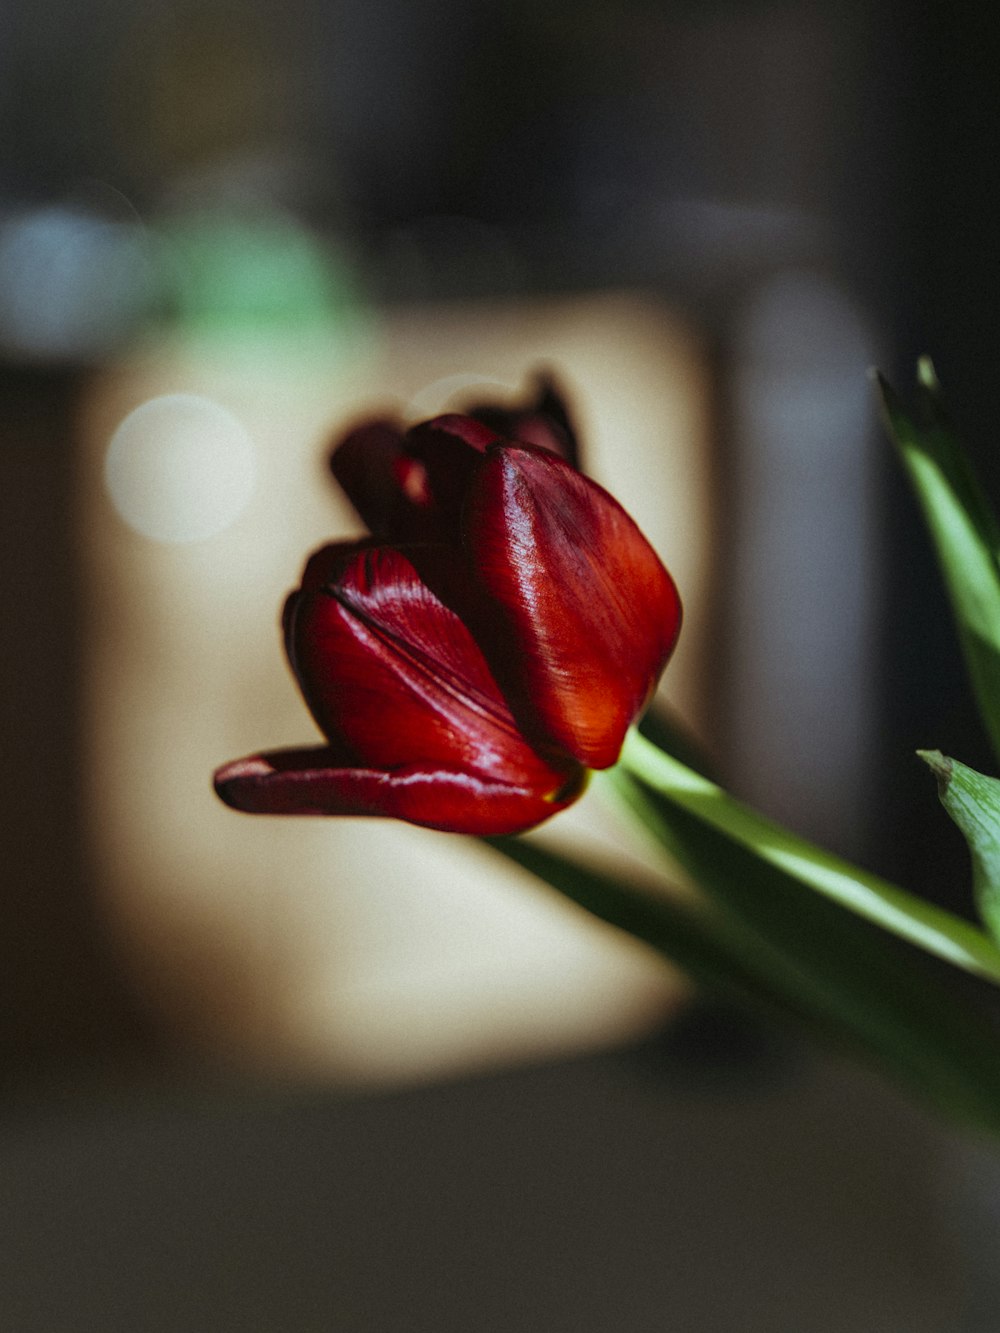 咲く赤いチューリップ、クローズアップ写真